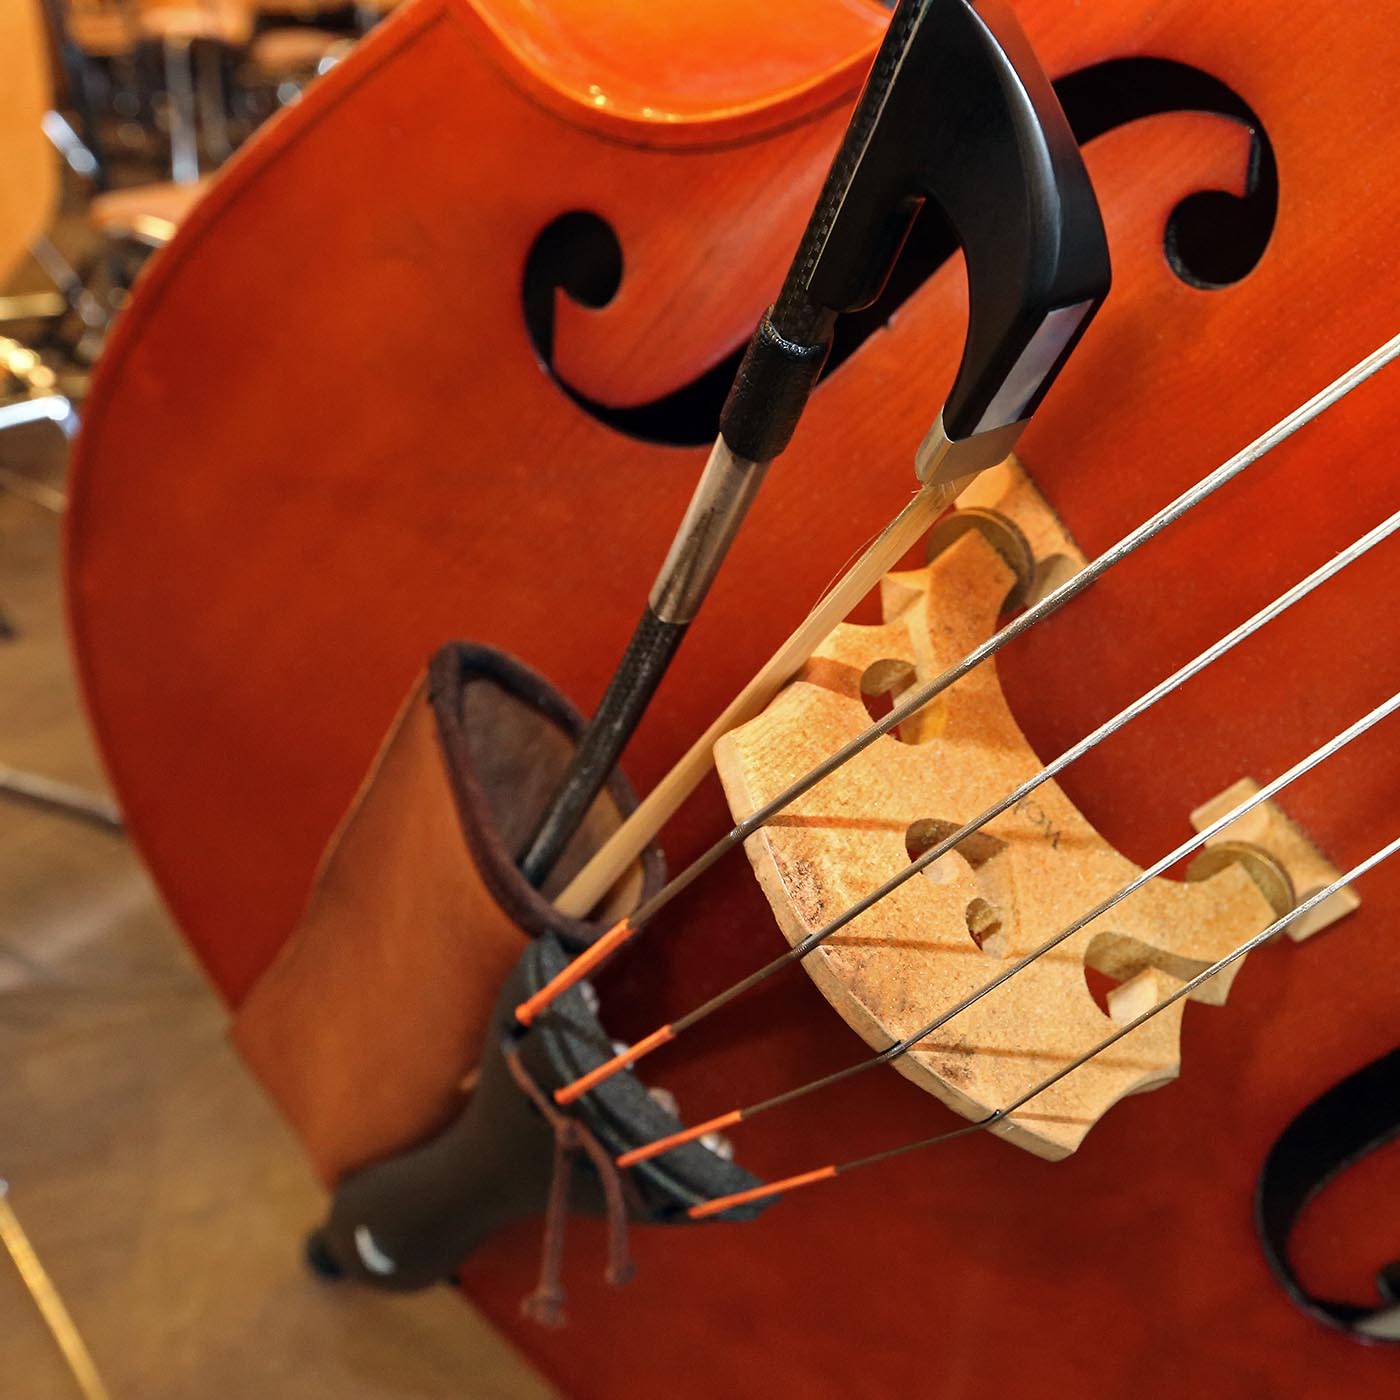 Pśedstajimy muzikowe instrumenty: kontrabas